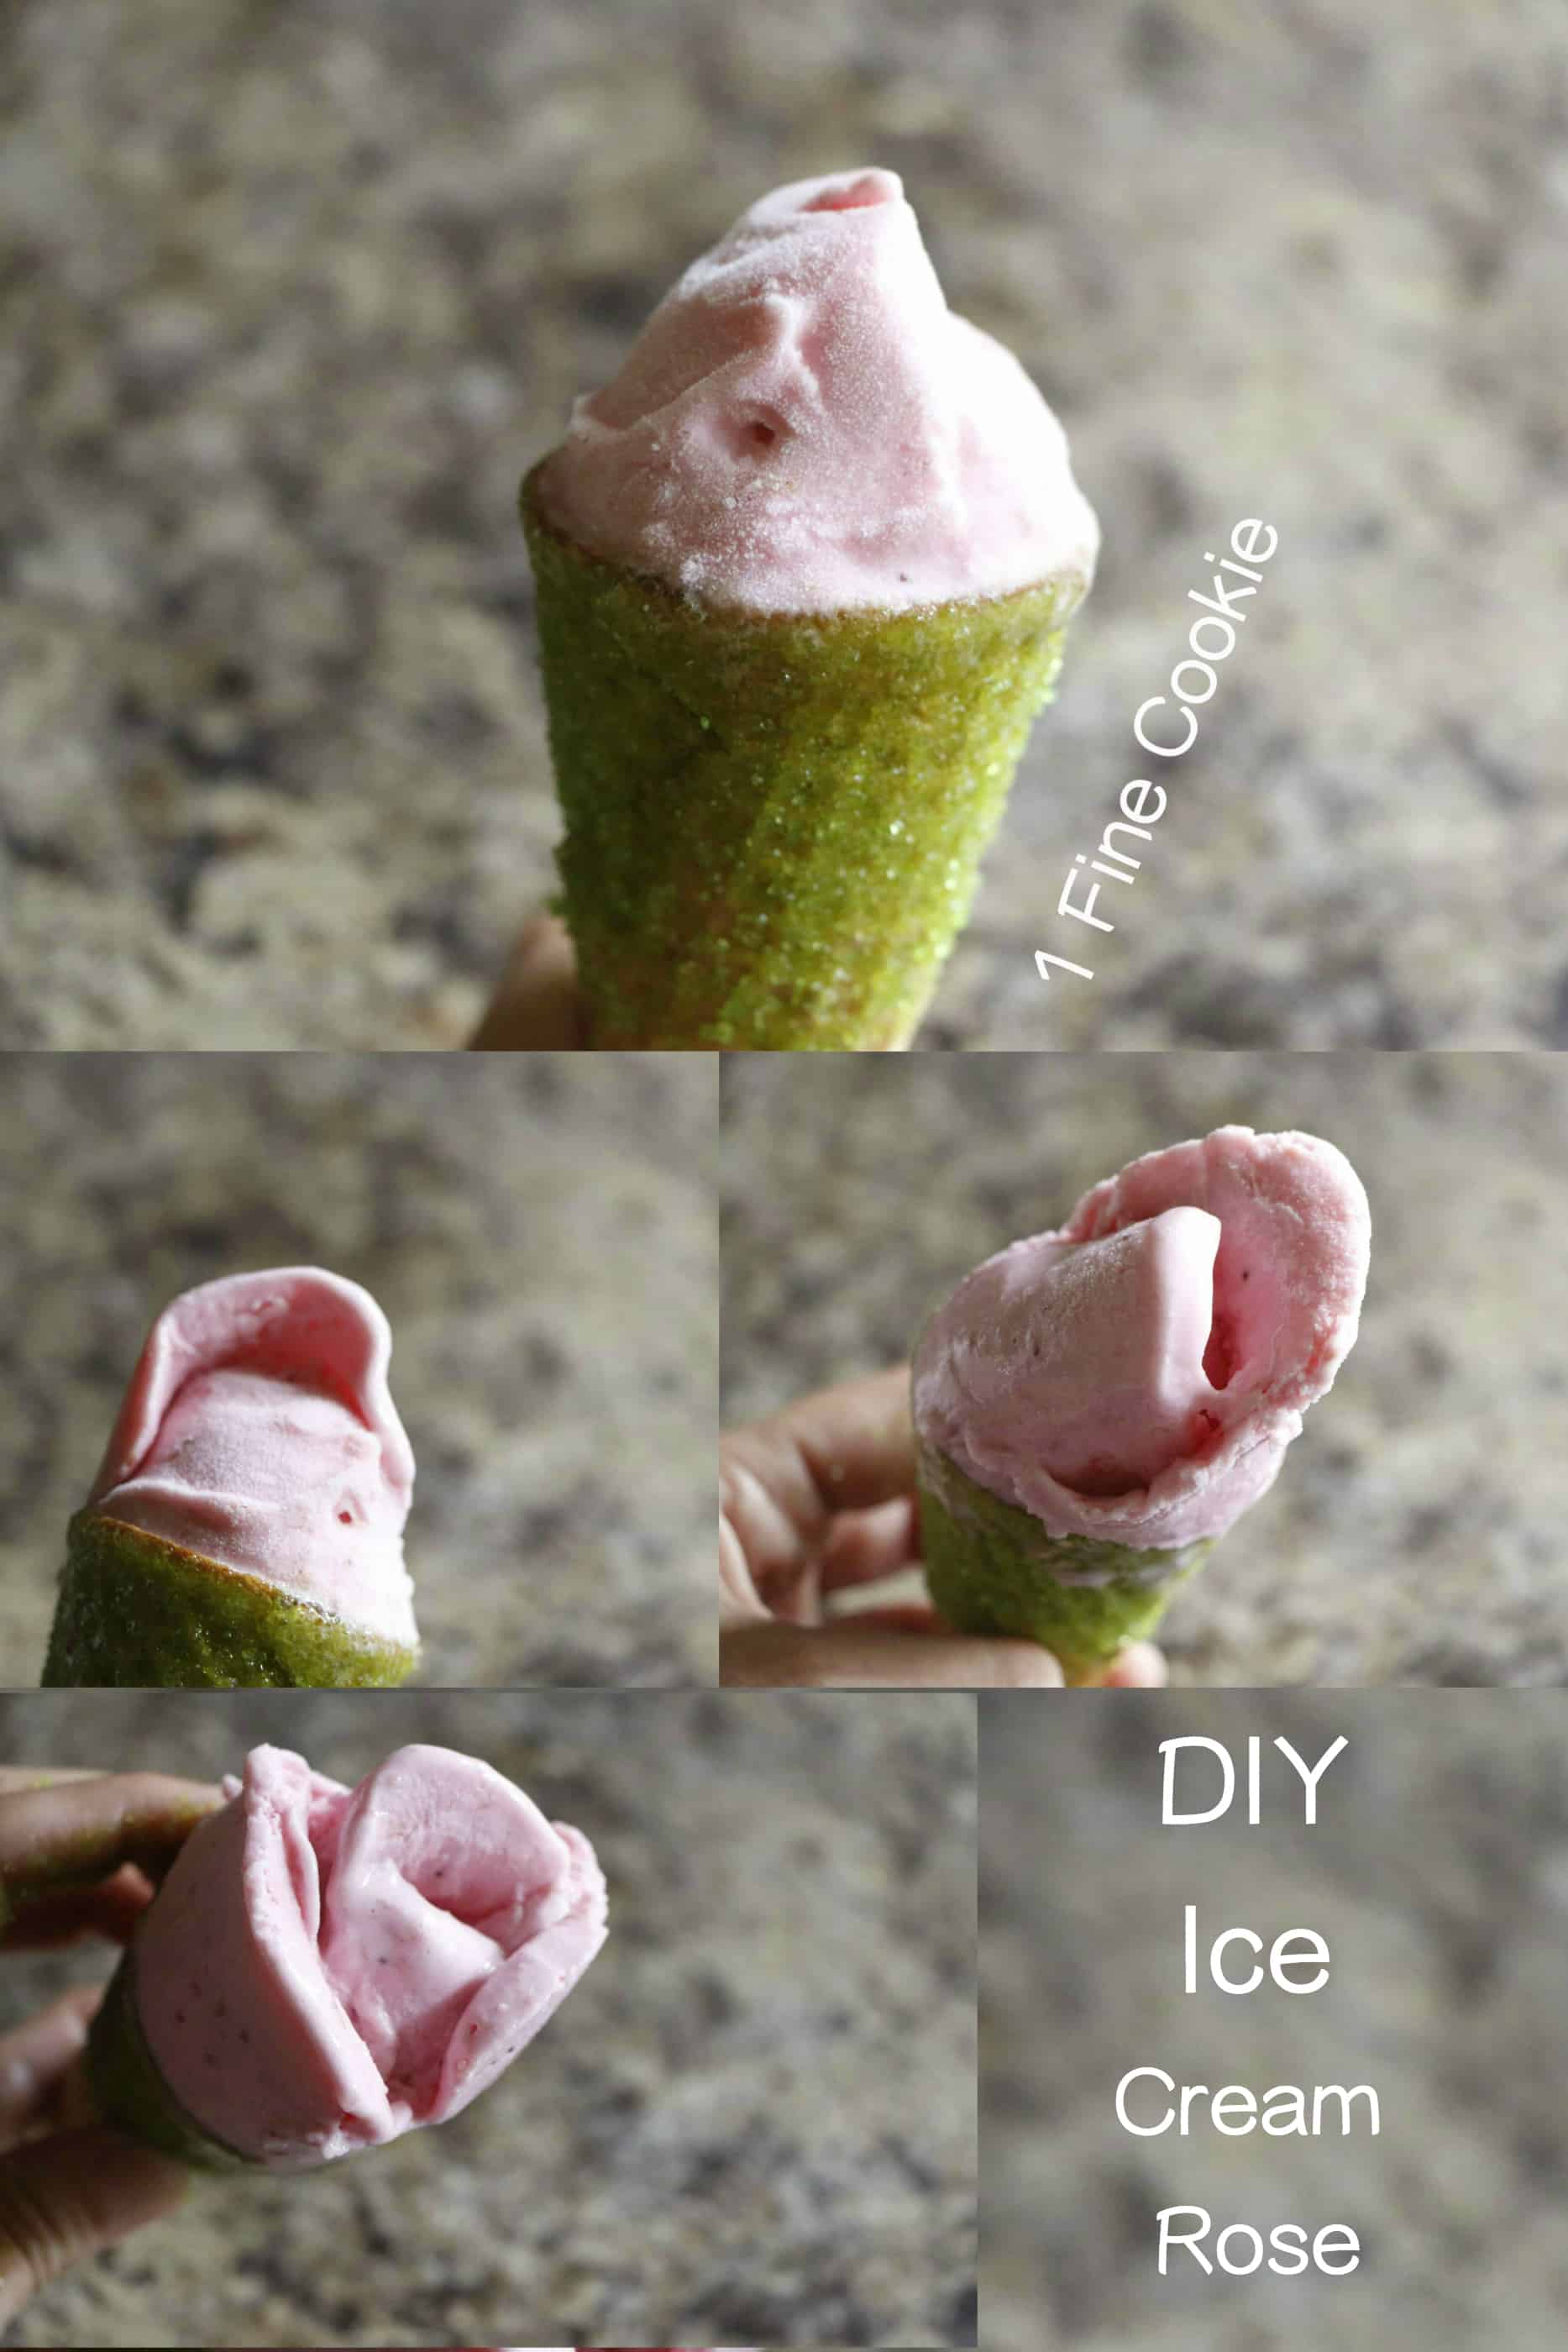 Diy ice cream rose